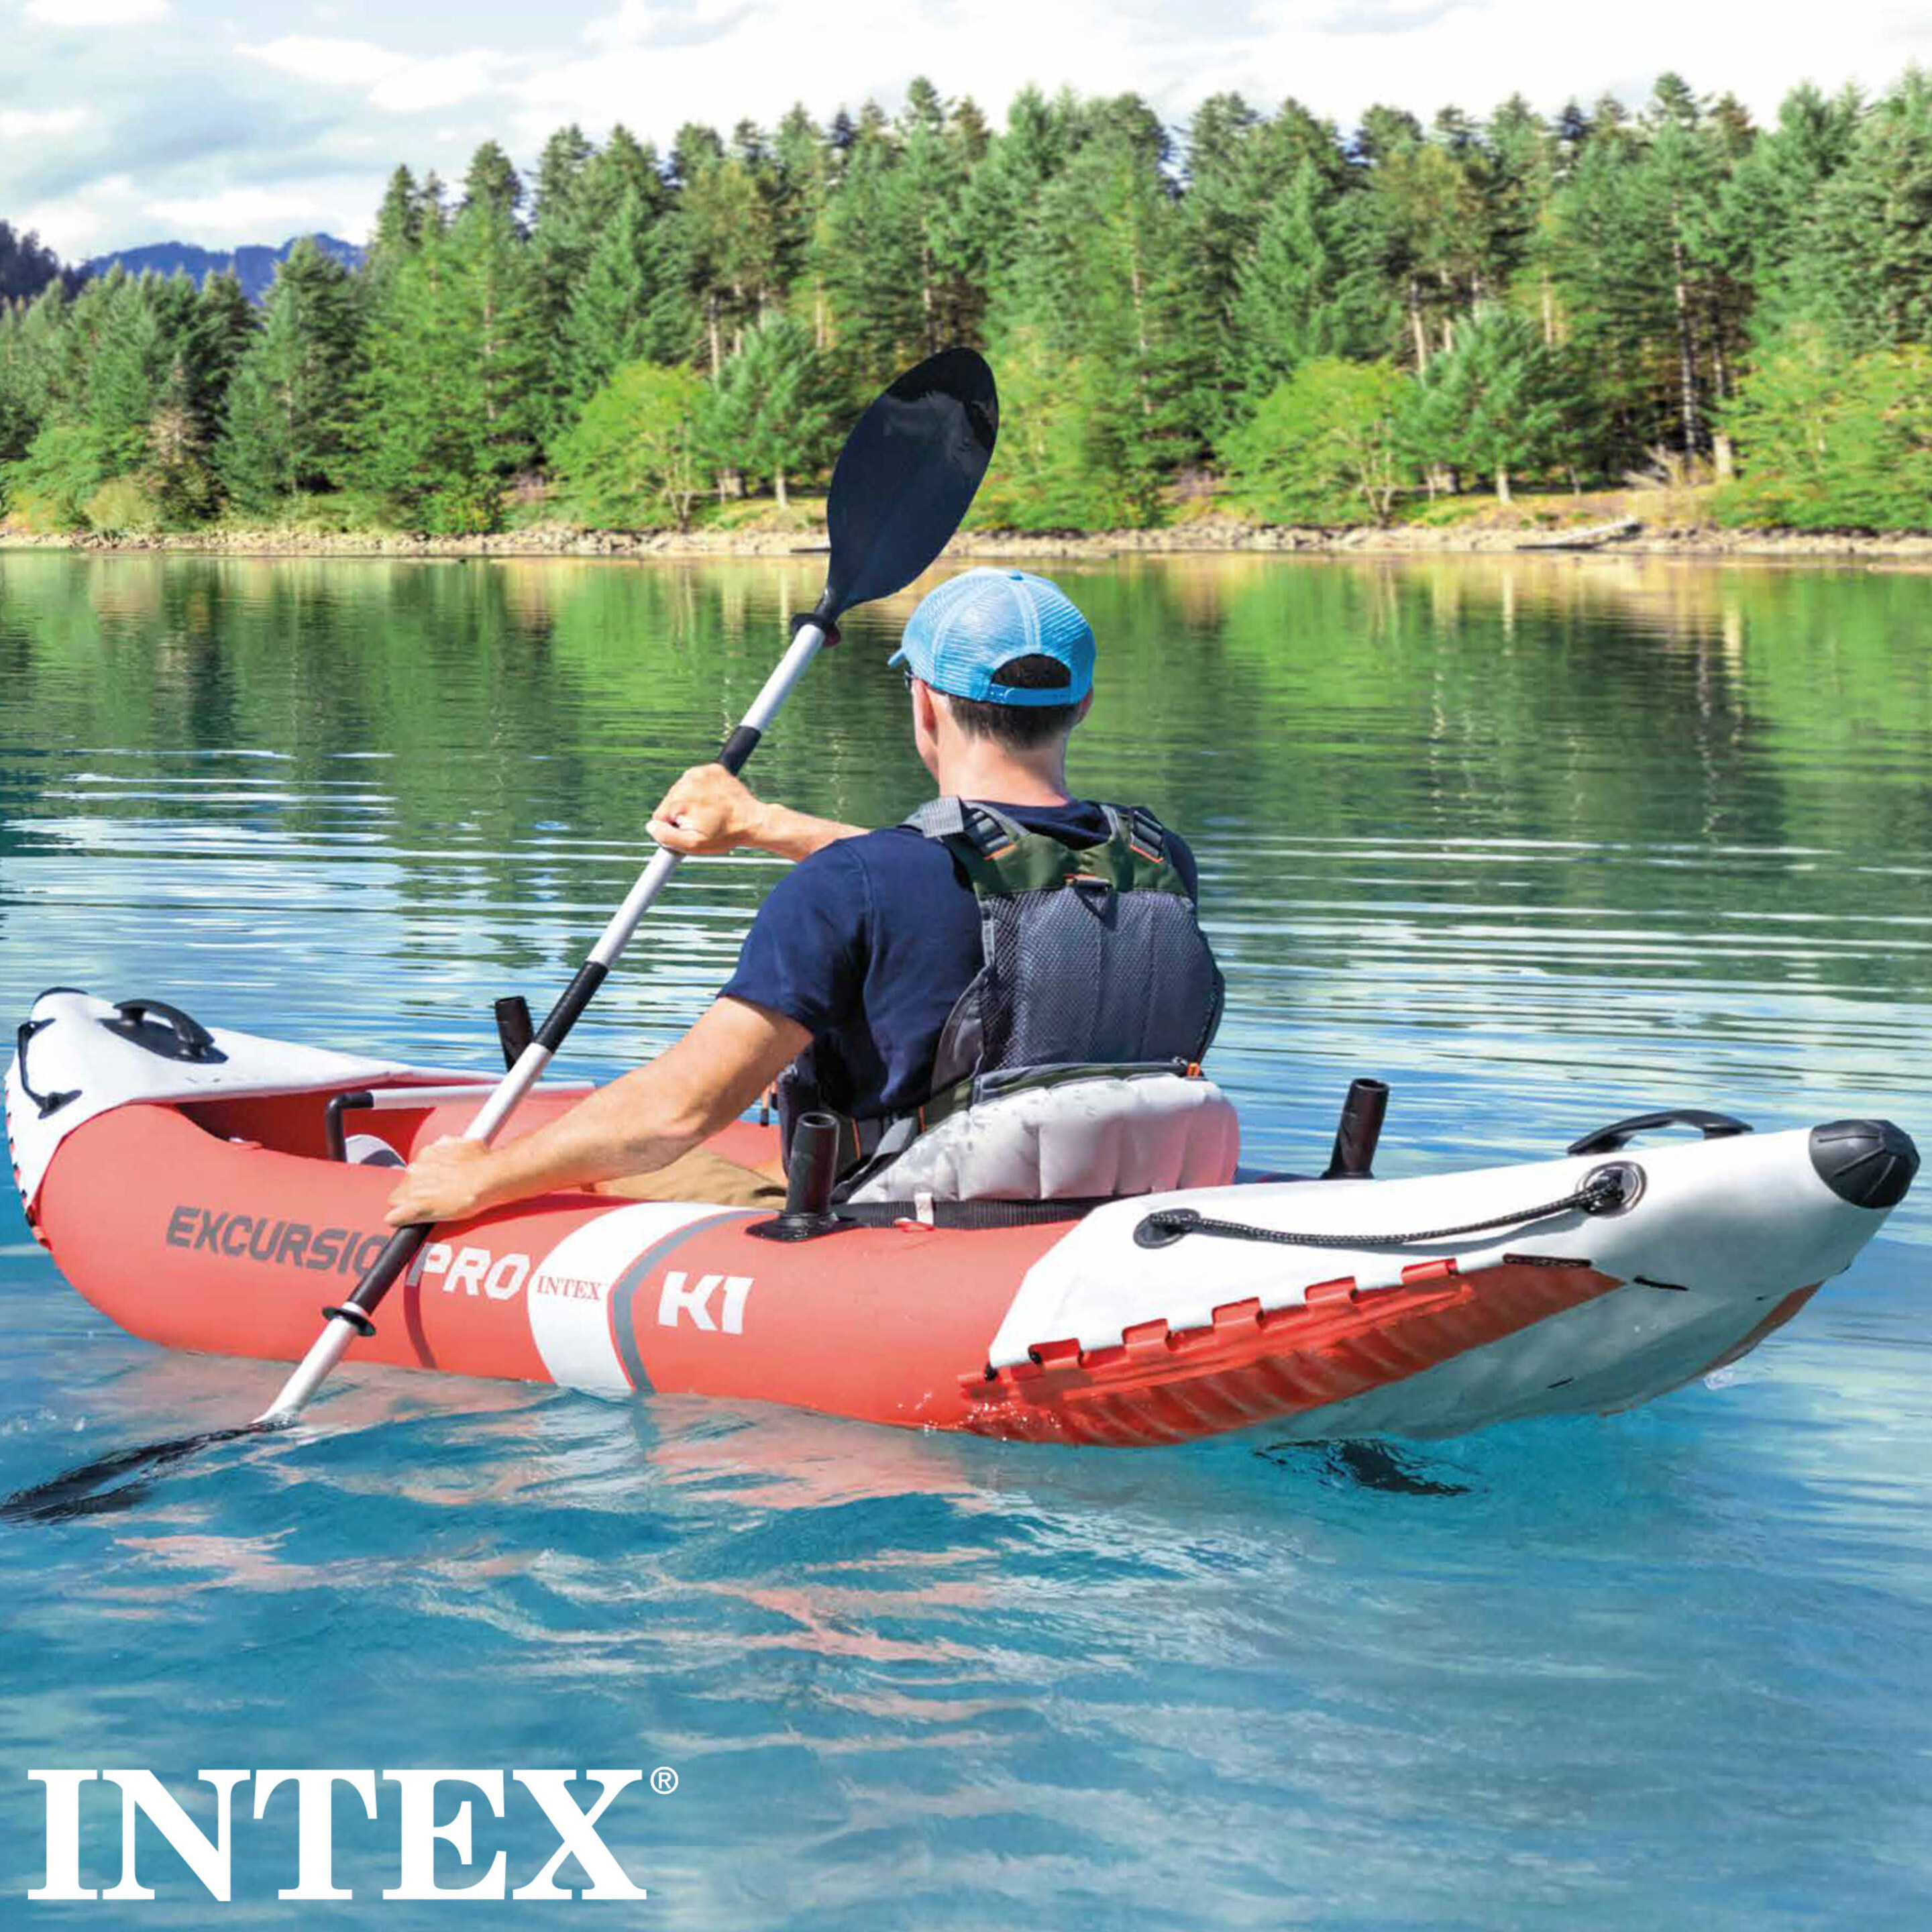 Kayak Hinchable Intex K1 Excursion Pro 1 Remo + Hinchador - Rojo - Kayak individual  MKP